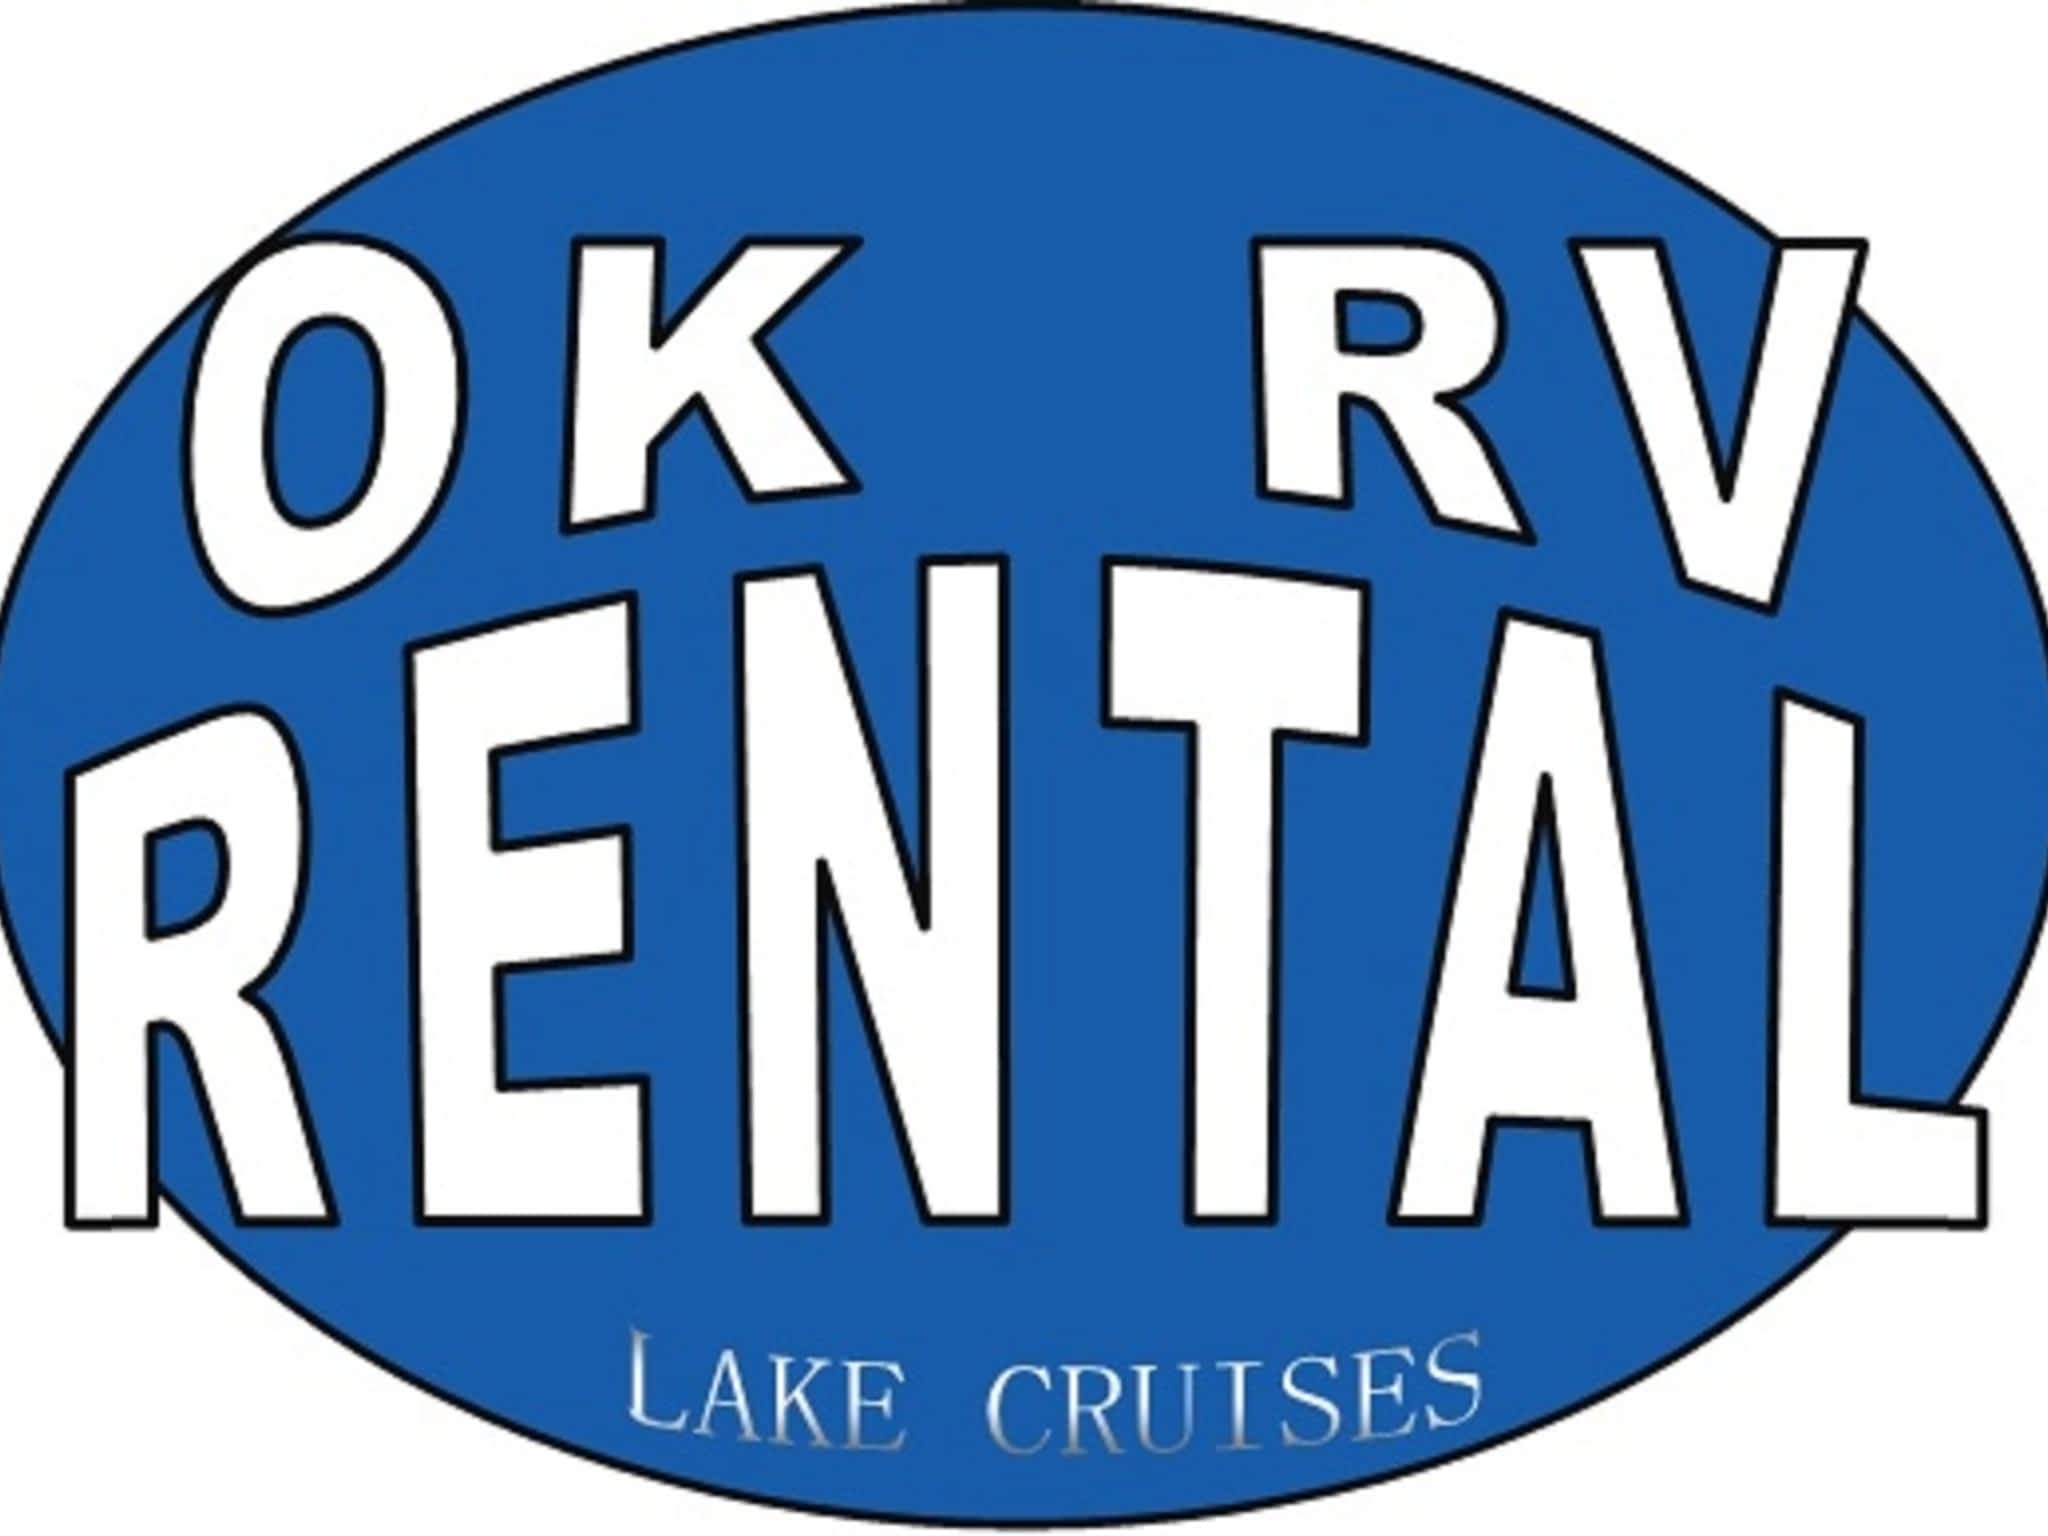 photo OK RV - Travel Trailer Rental & Lake Tours